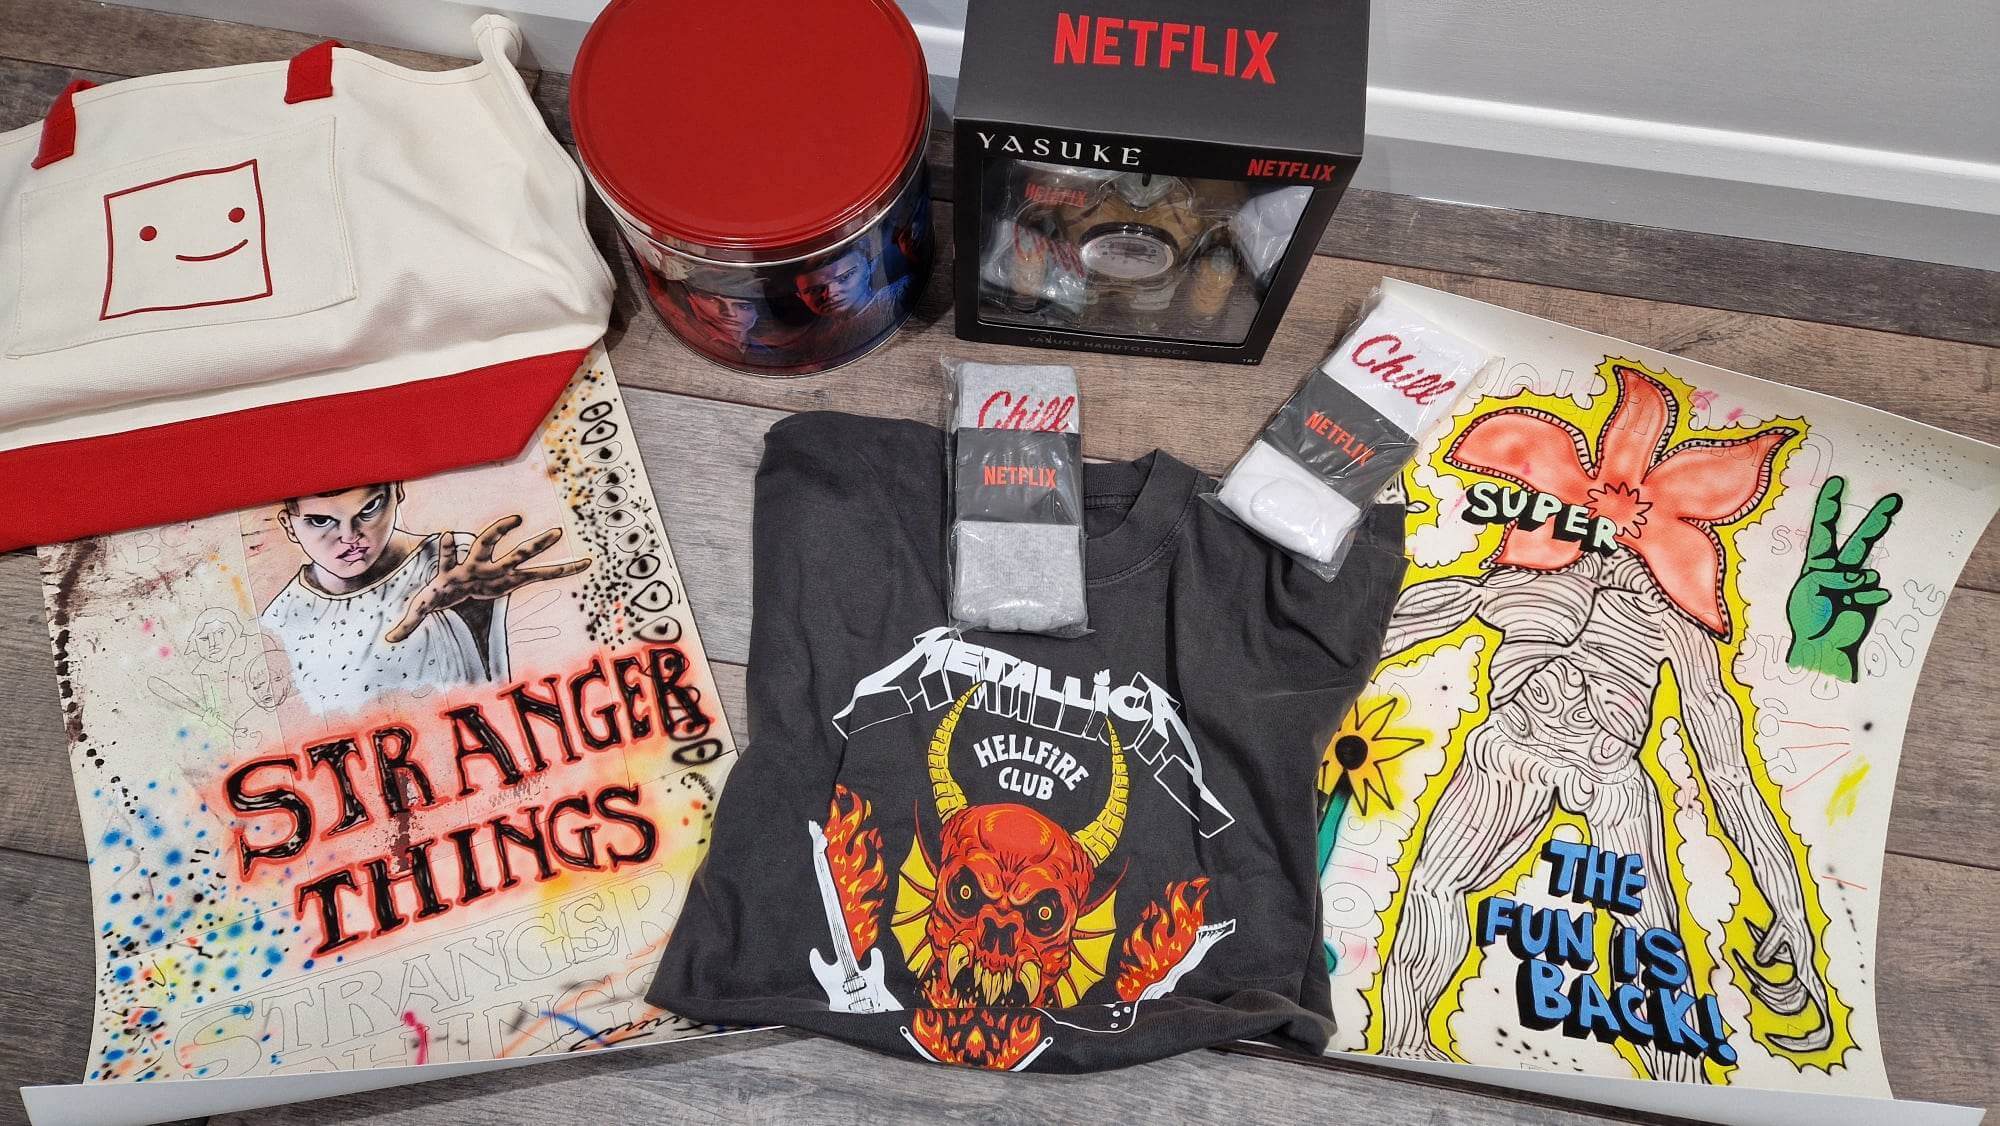 Compra de paquetes misteriosos de Netflix